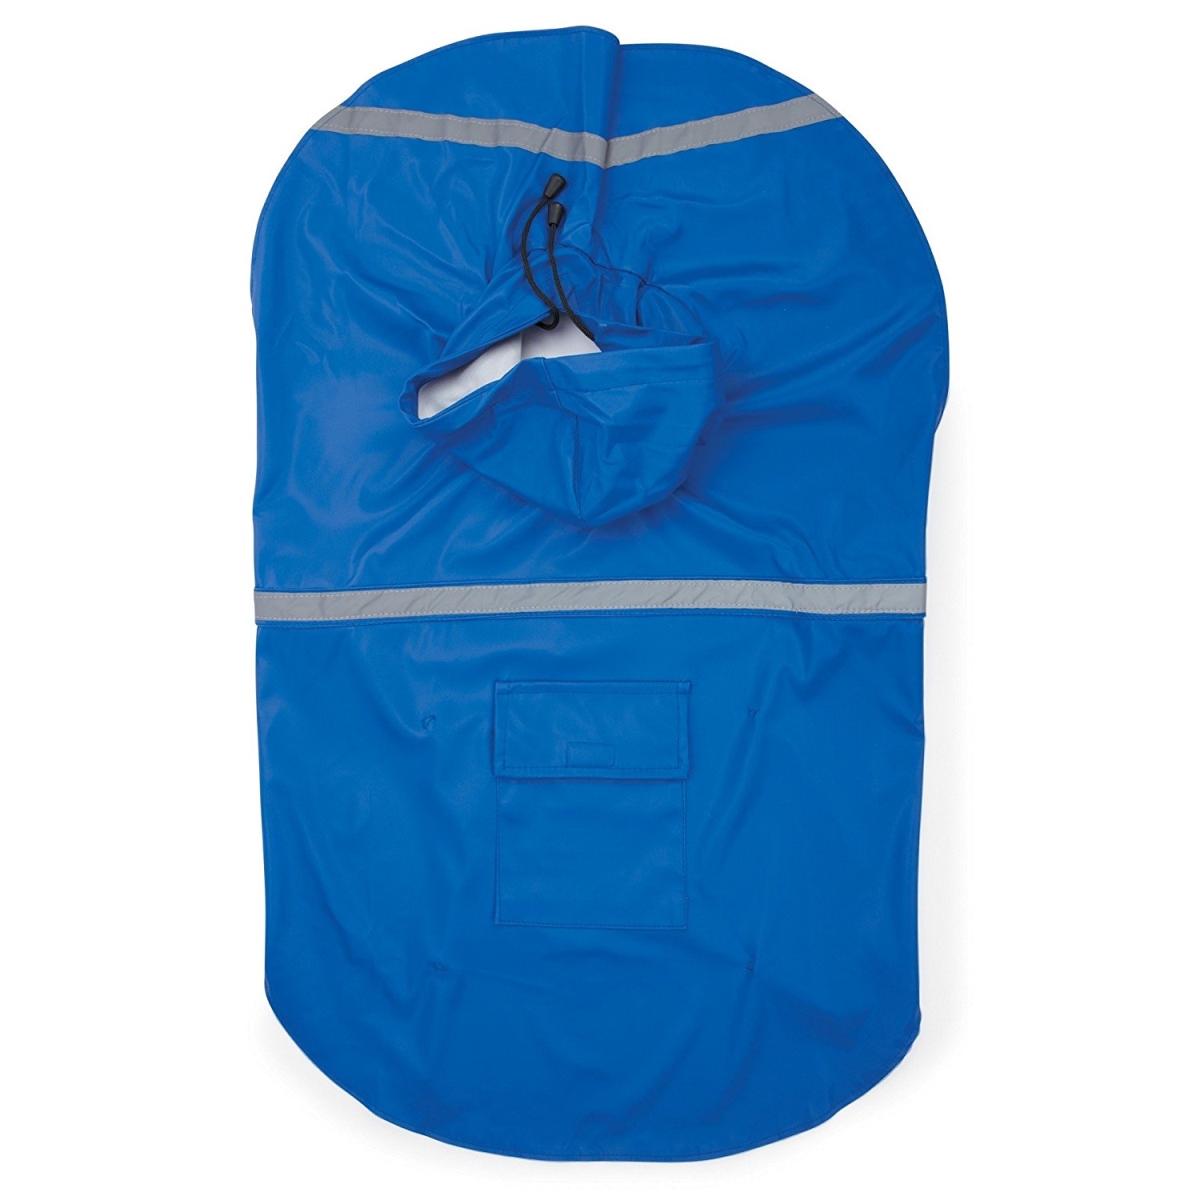 Guardian Gear Rain Jacket, Blue - Large